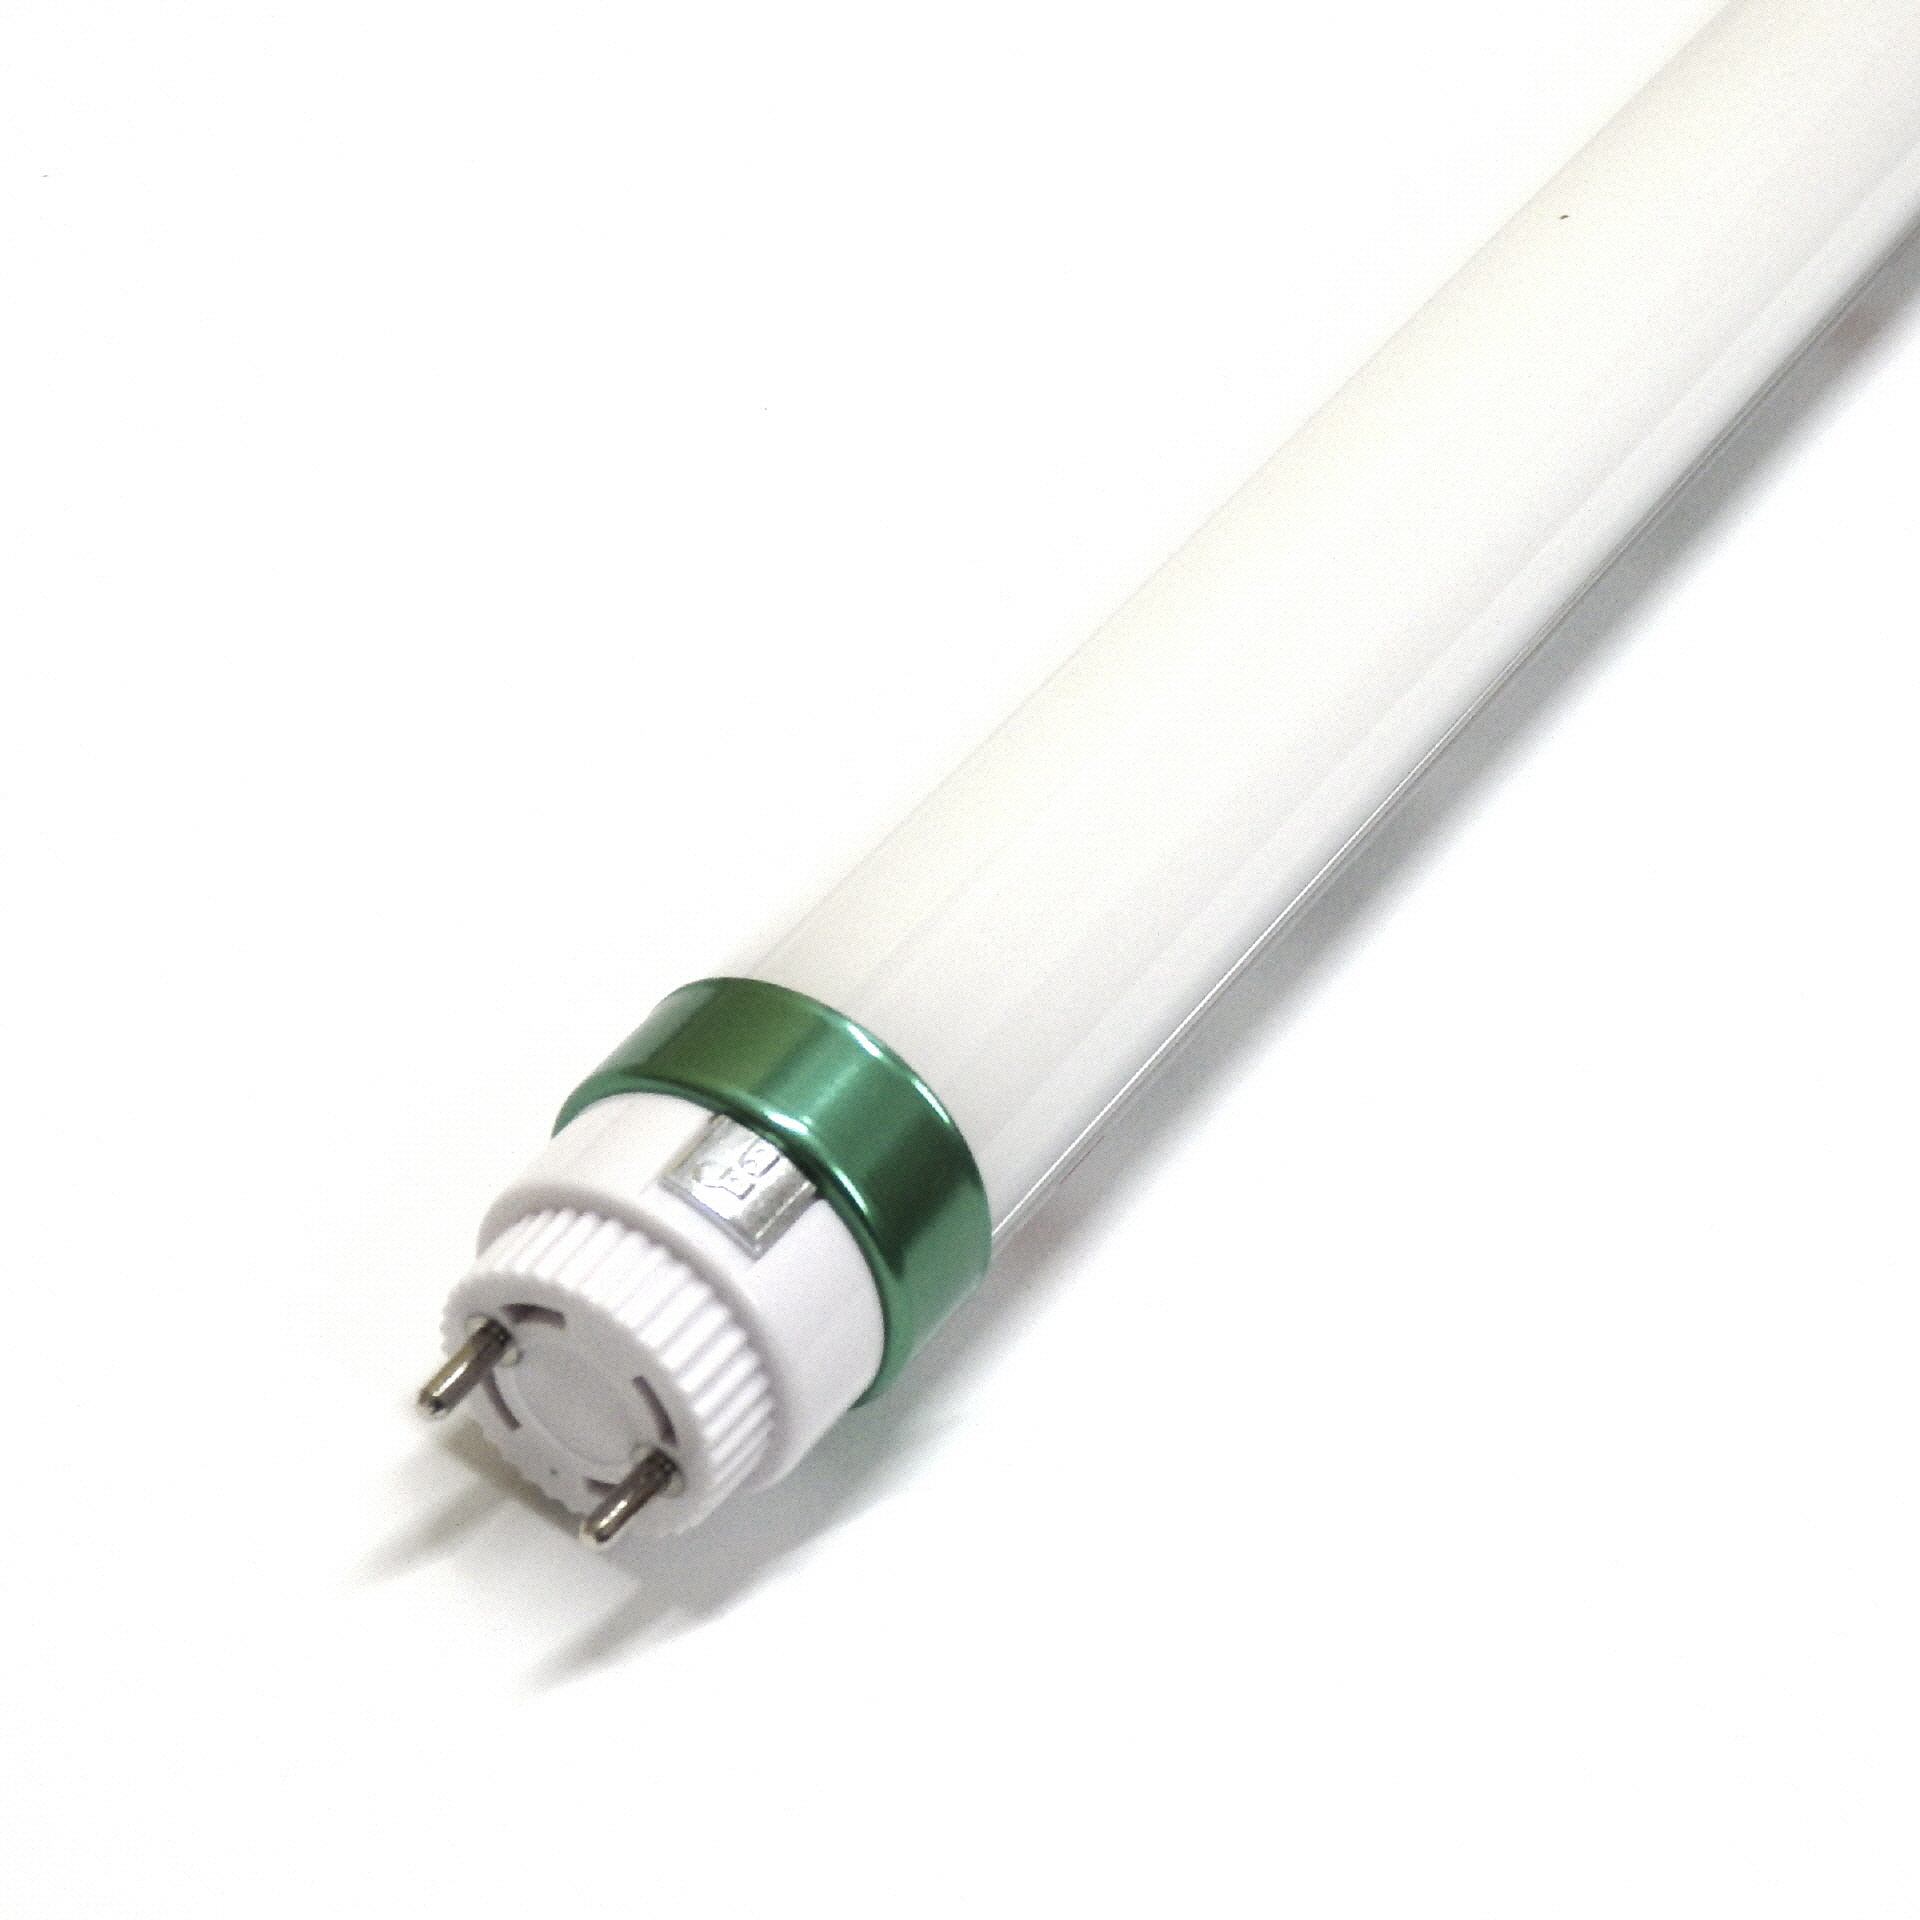 Abdeckung mit Diffusor für T8 LED-Röhre - 120 cm